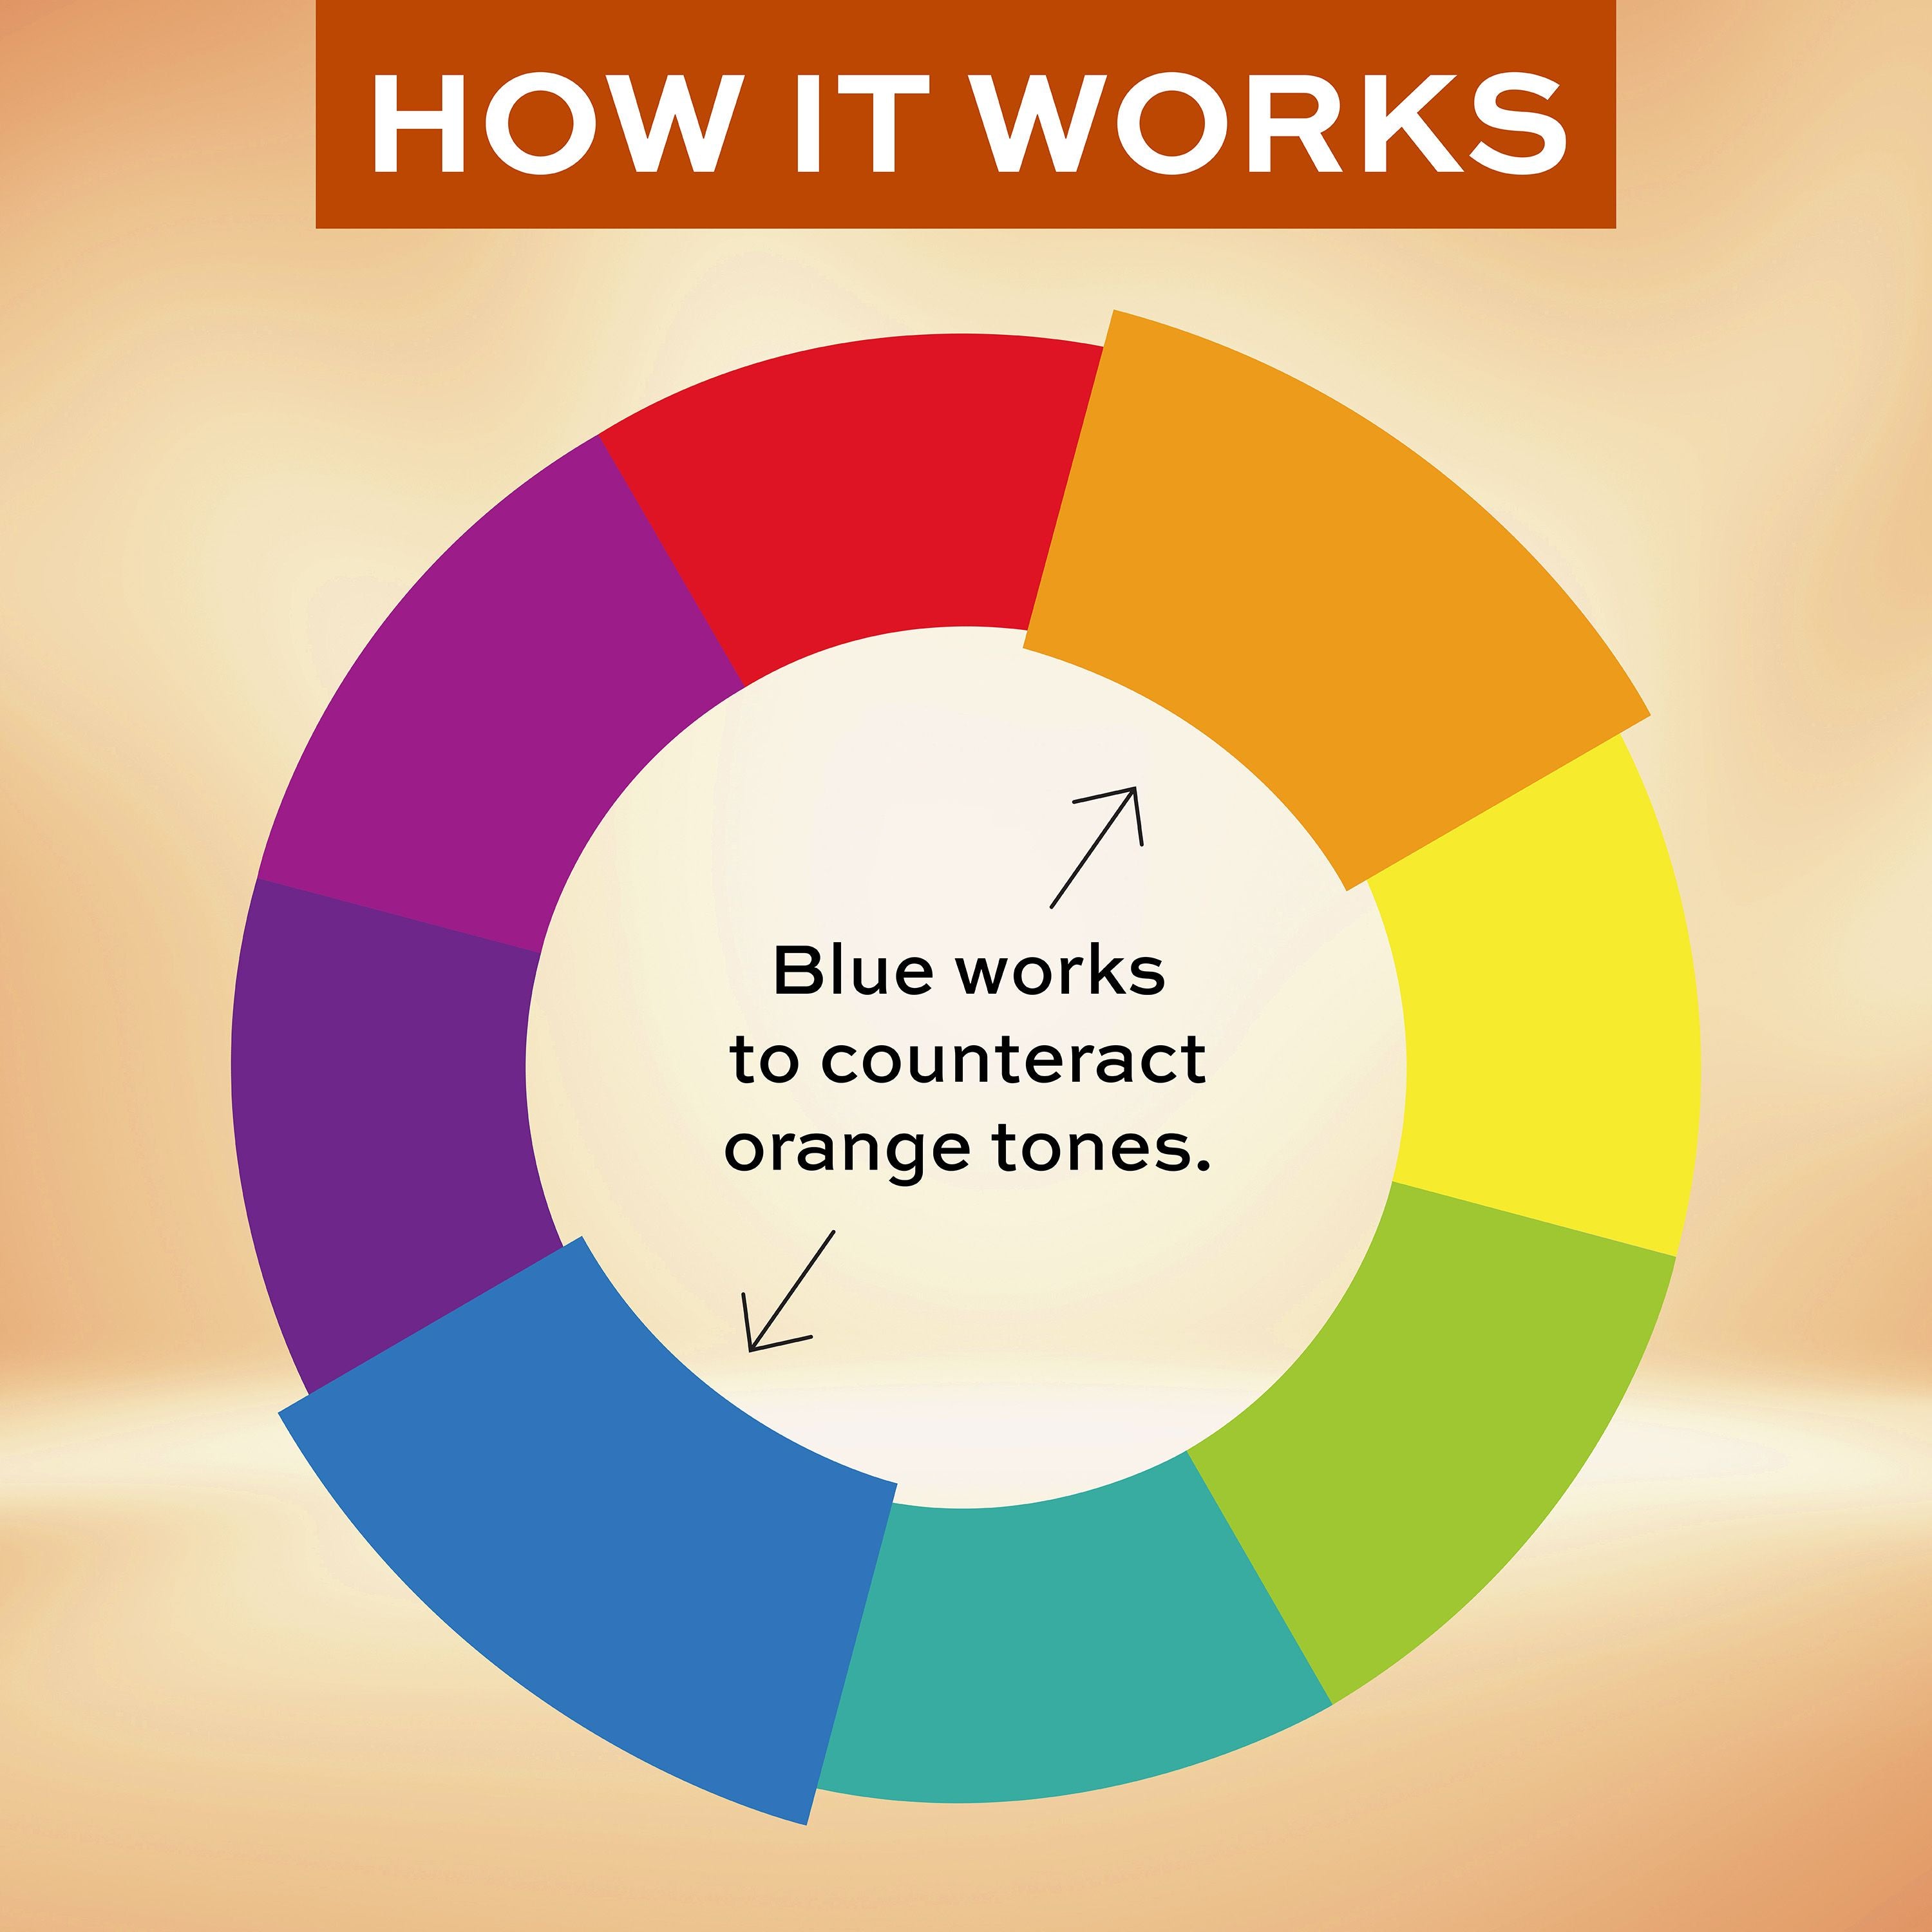 English: How it works, blue works to counteracts orange tones. Français: Mode d’action : le bleu neutralise les tons orangés.